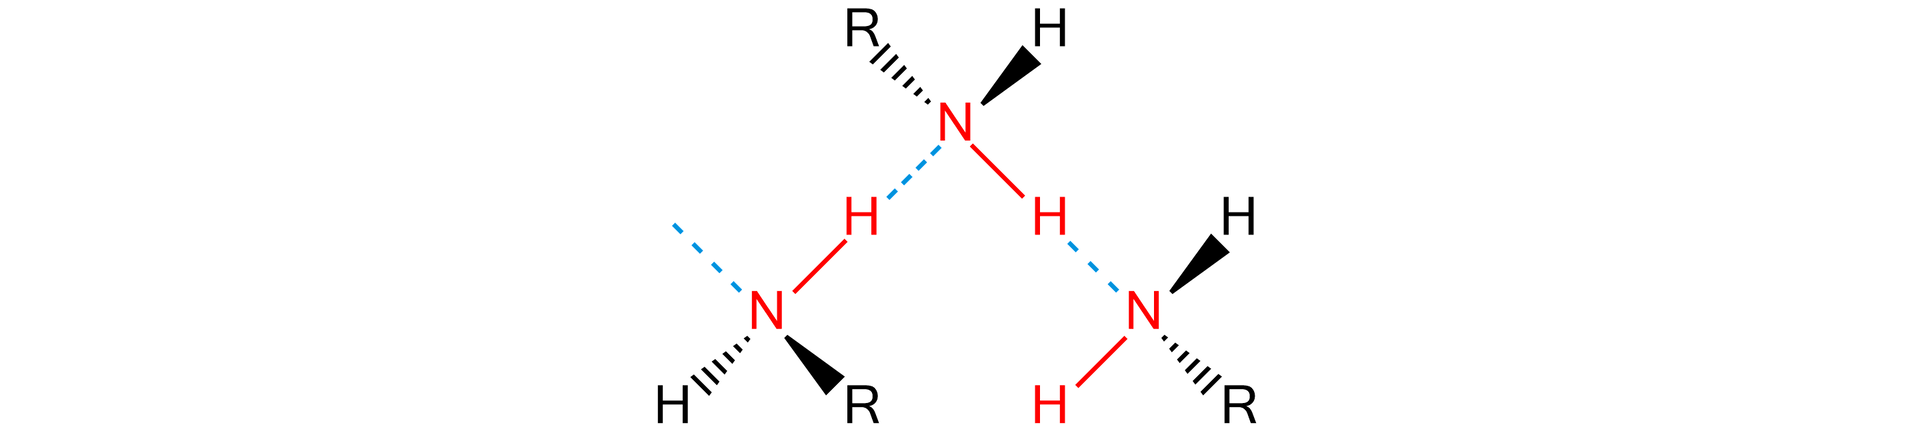 Na ilustracji znajdują się trzy cząsteczki aminy pierwszorzędowej, do atomu azotu przyłączone są dwa atomy wodoru oraz grupa R. Między atomami wodoru a azotu sąsiednich cząsteczek występują wiązania wodorowe, które zilustrowano przerywanymi liniami.